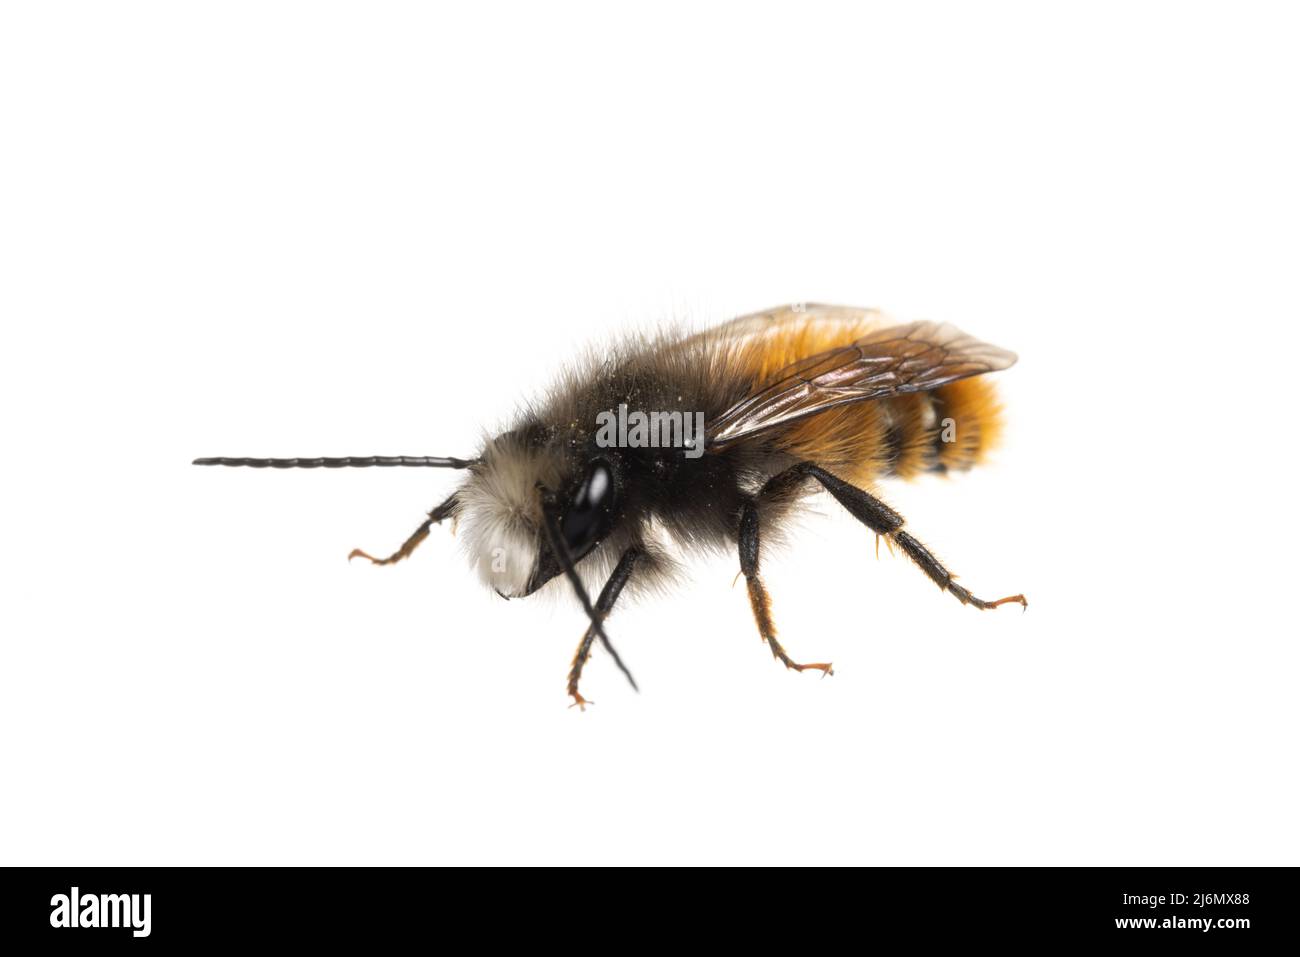 Insectes d'europe - abeilles: Vue de face de l'abeille mâle Osmia cornuta Orchard européen (gehoernte Mauerbiene allemand) isolée sur fond blanc Banque D'Images